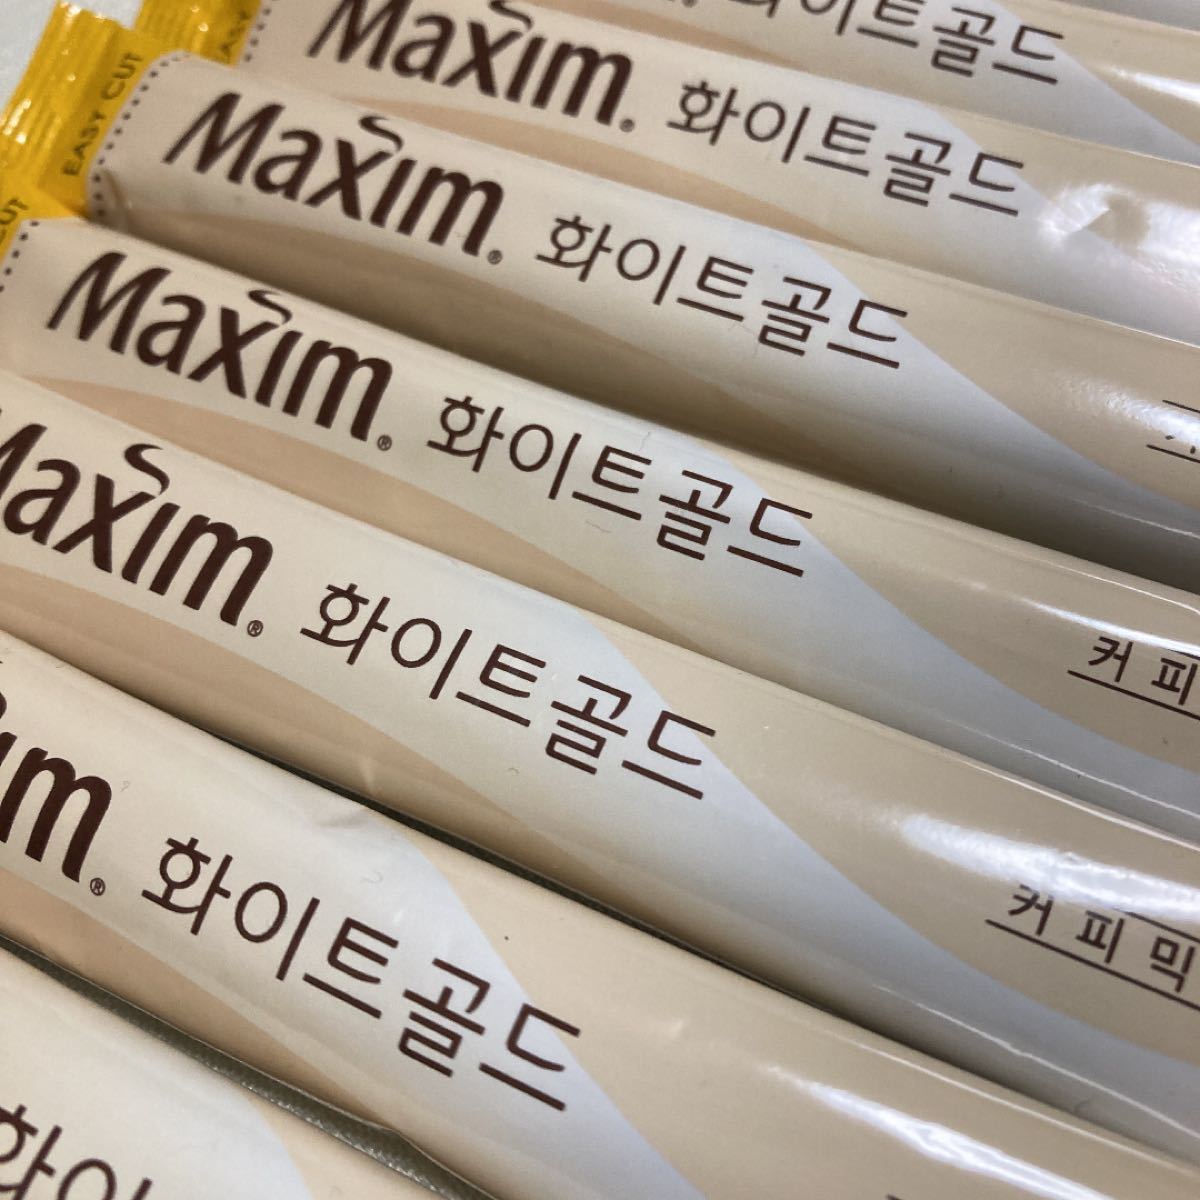 Maxim ホワイトゴールド  マキシムコーヒー 韓国コーヒーミックス 10本 詰合せ